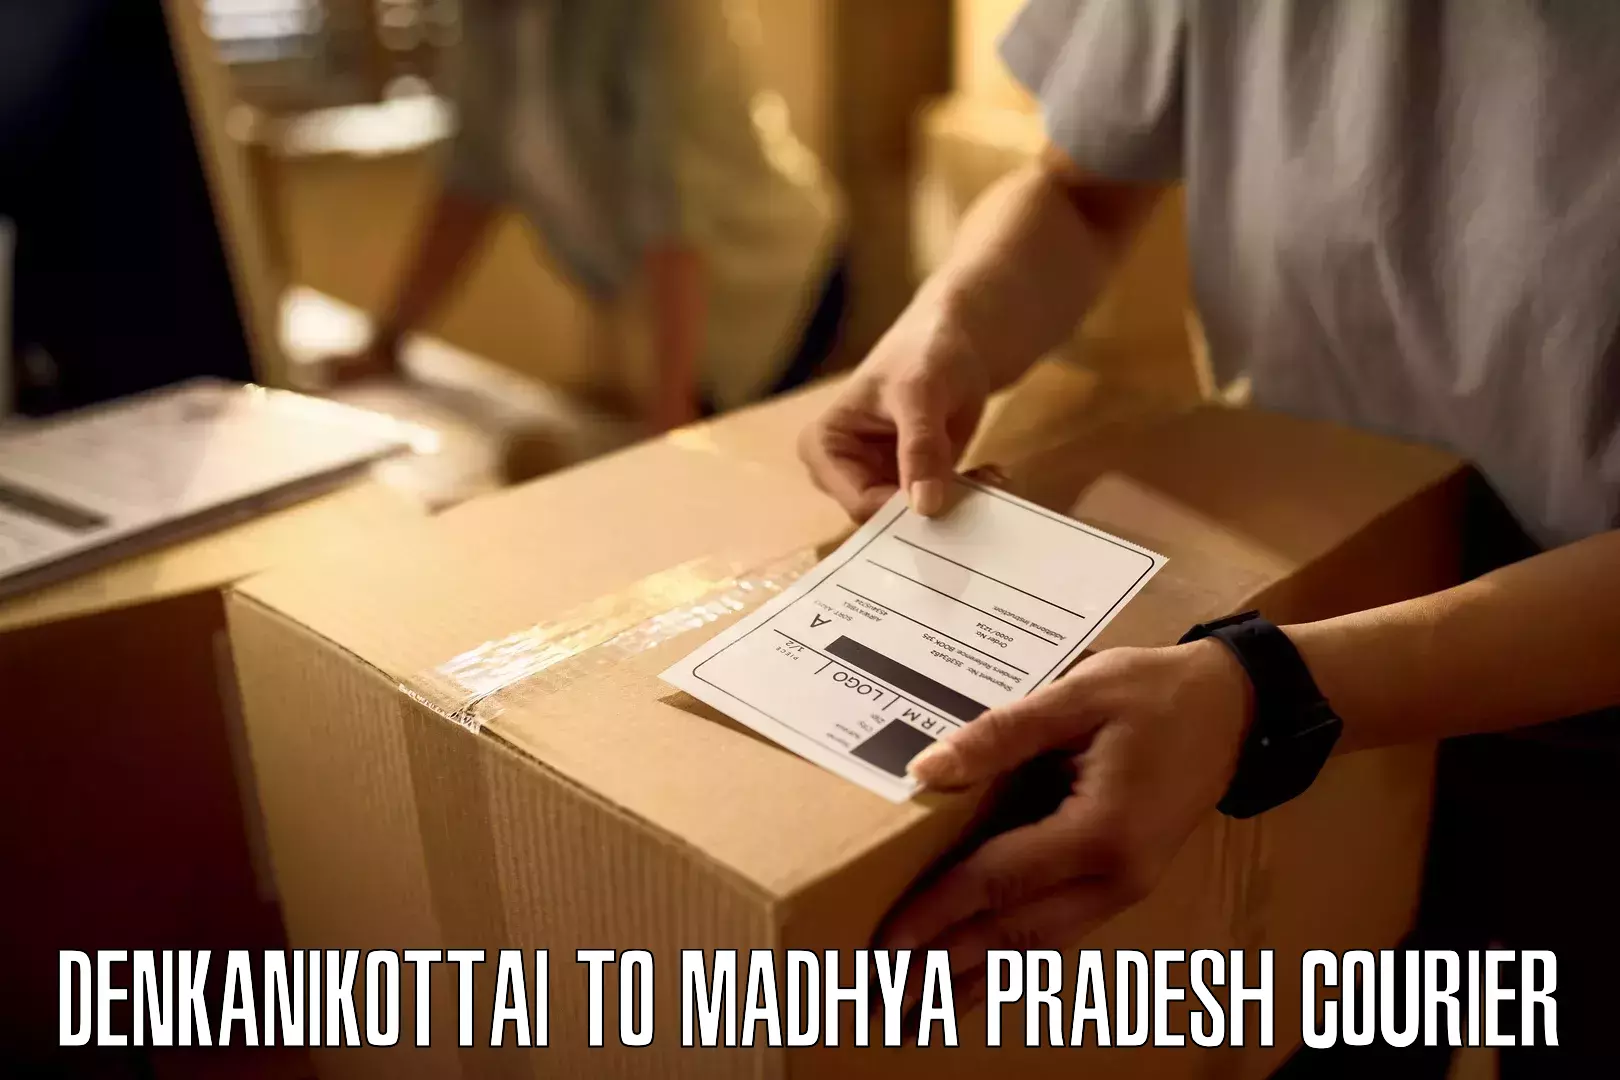 Versatile courier offerings in Denkanikottai to Multai